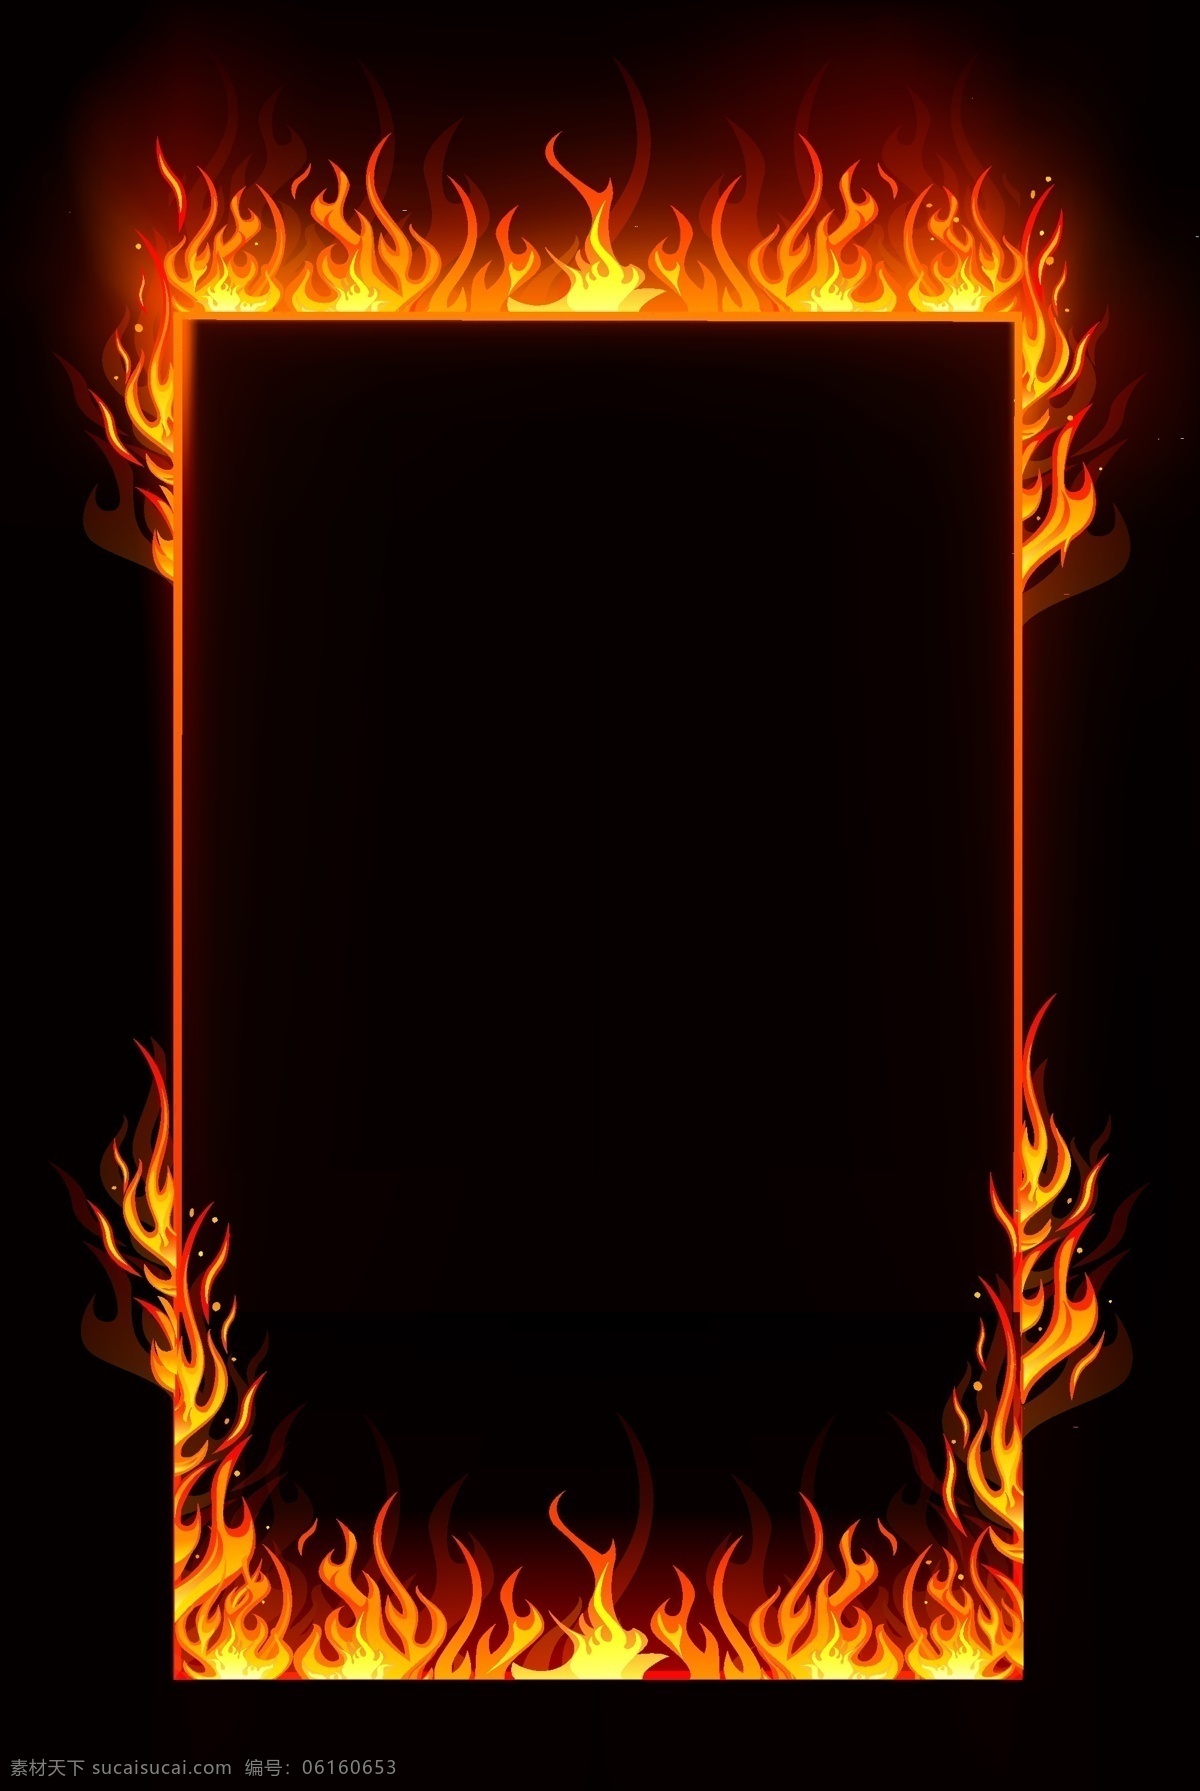 矢量 燃烧 火焰 边框 创意 黑色 橙色火焰 火苗 火焰边框 火 火元素 质感 大气 欧式 火海